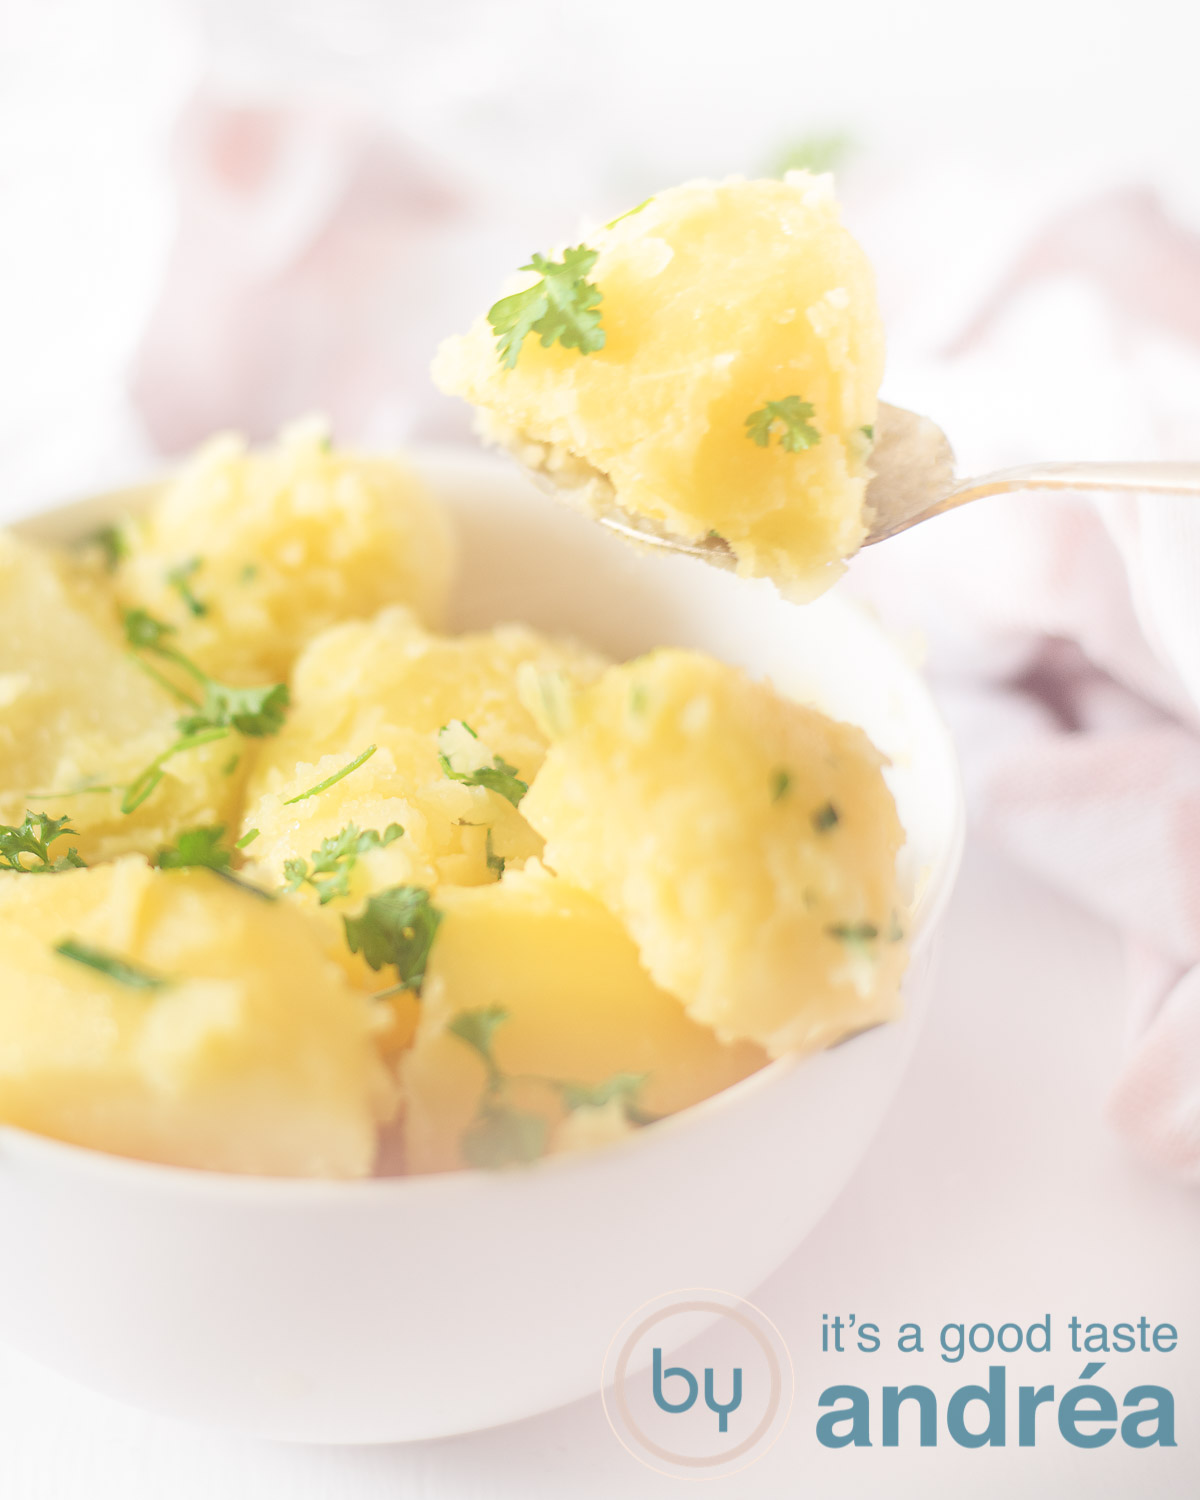 Aardappels met bieslook peterselie boter in een witte schaal een lepel neemt een aardappel uit de schaal. In de achtergrond een roze witte theedoek.